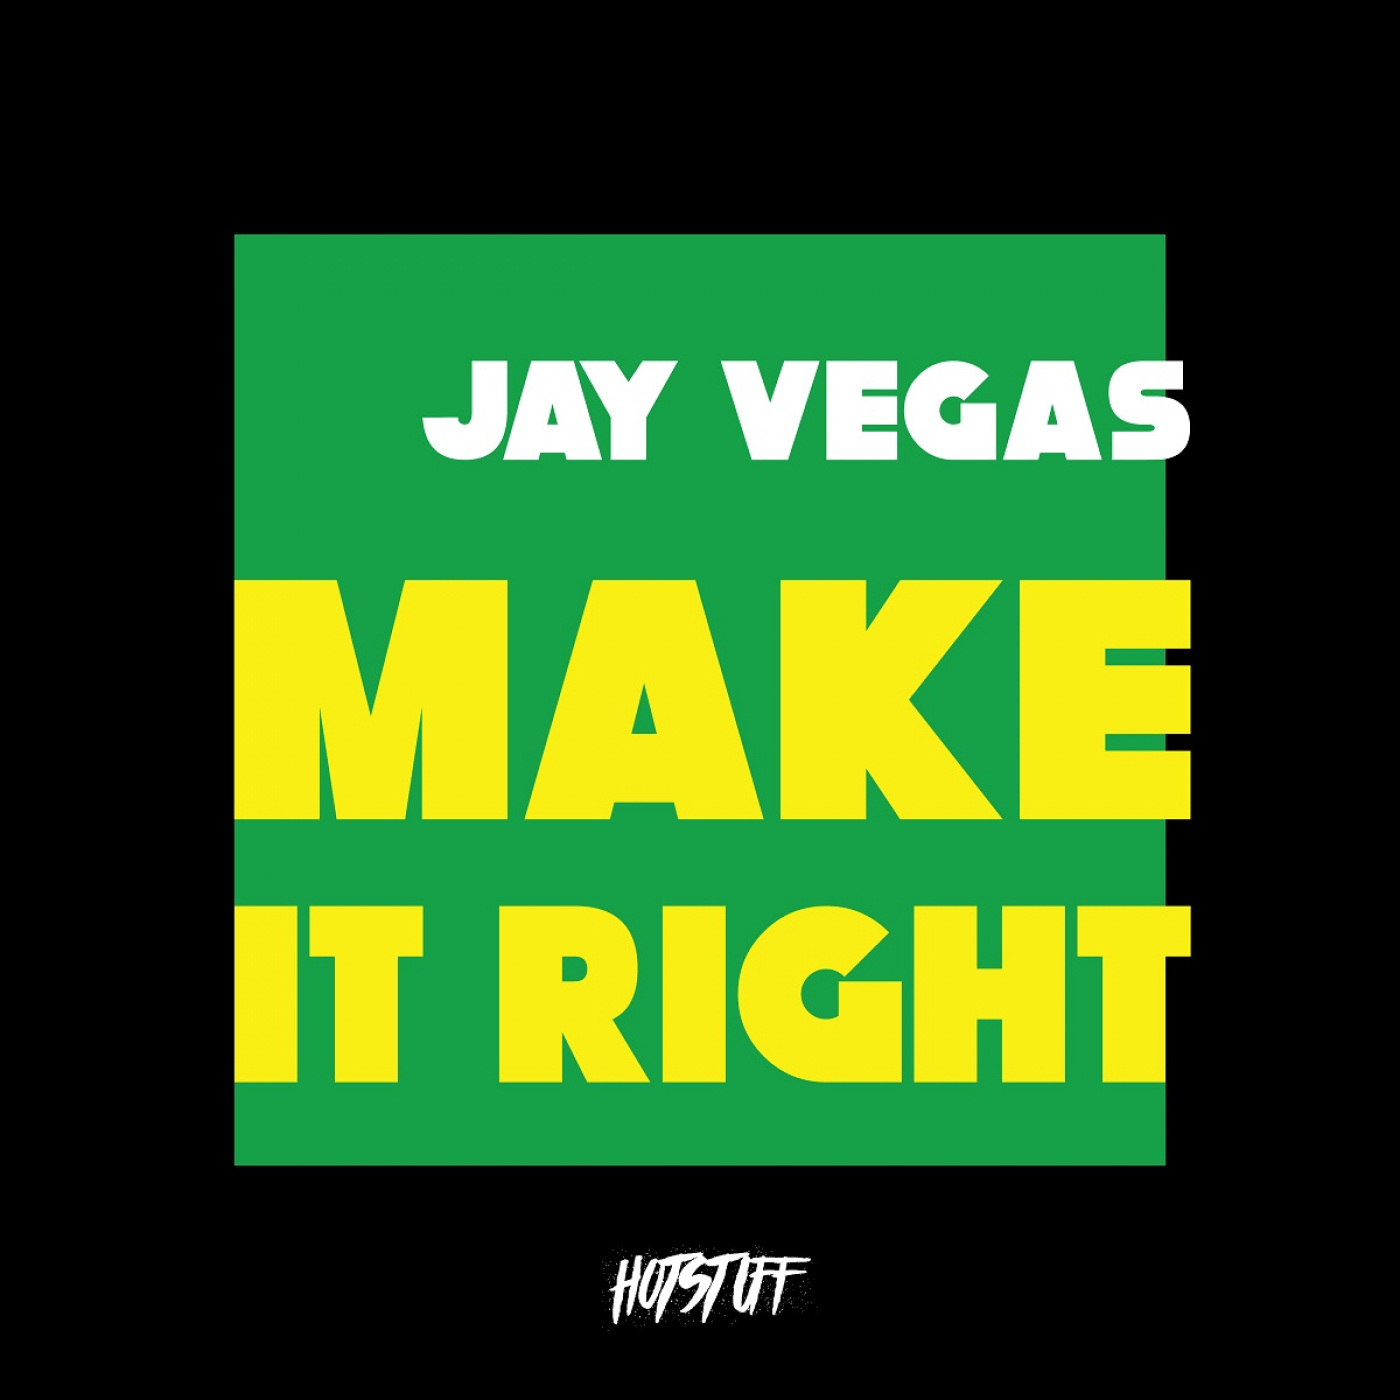 Jay Vegas - Make It Right / Hot Stuff